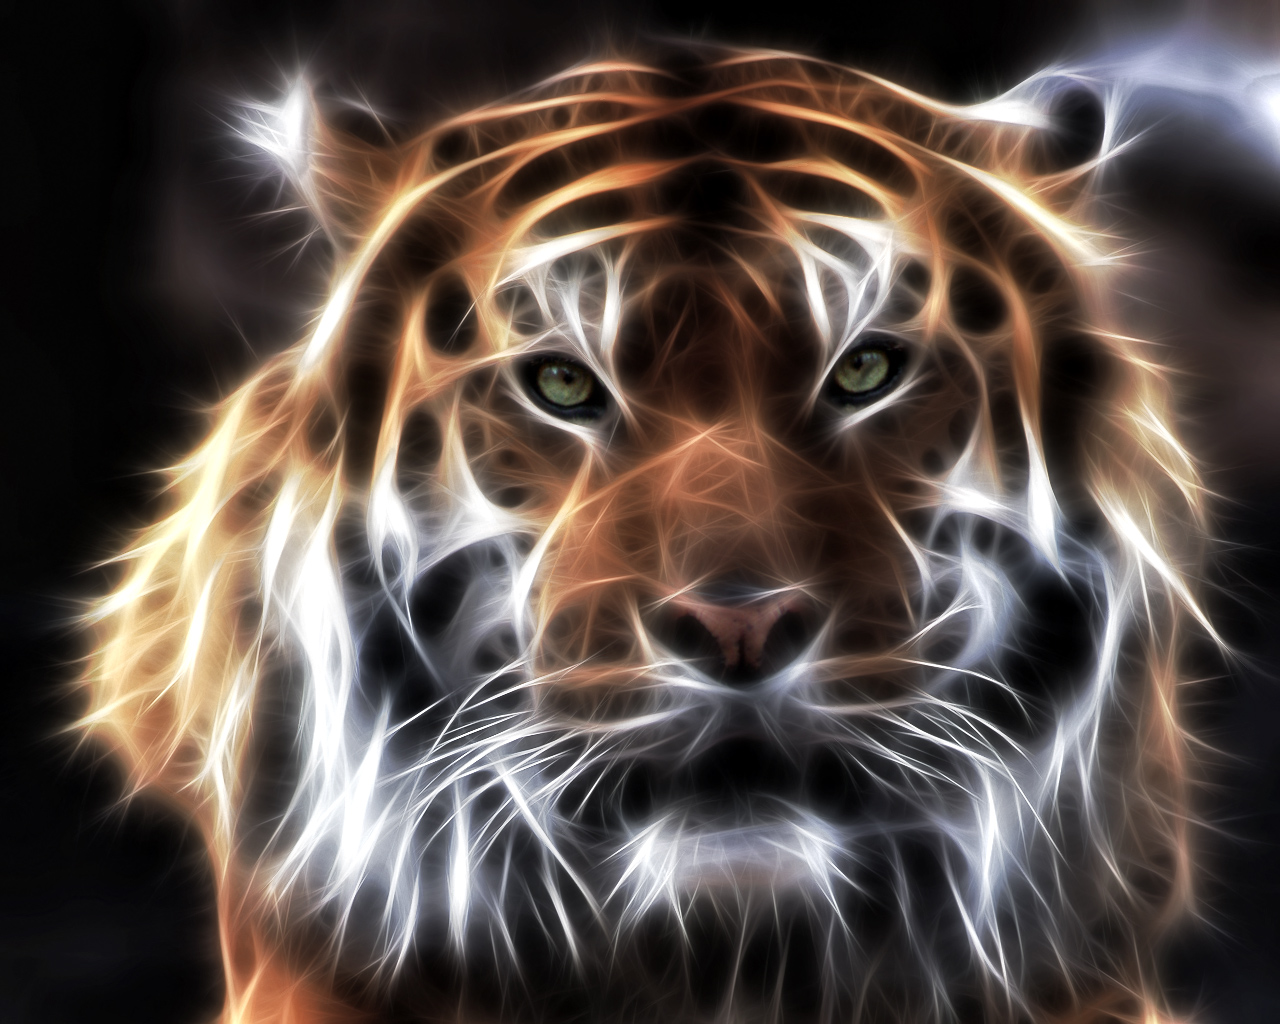 Скачать обои бесплатно Животные, Тигр картинка на рабочий стол ПК